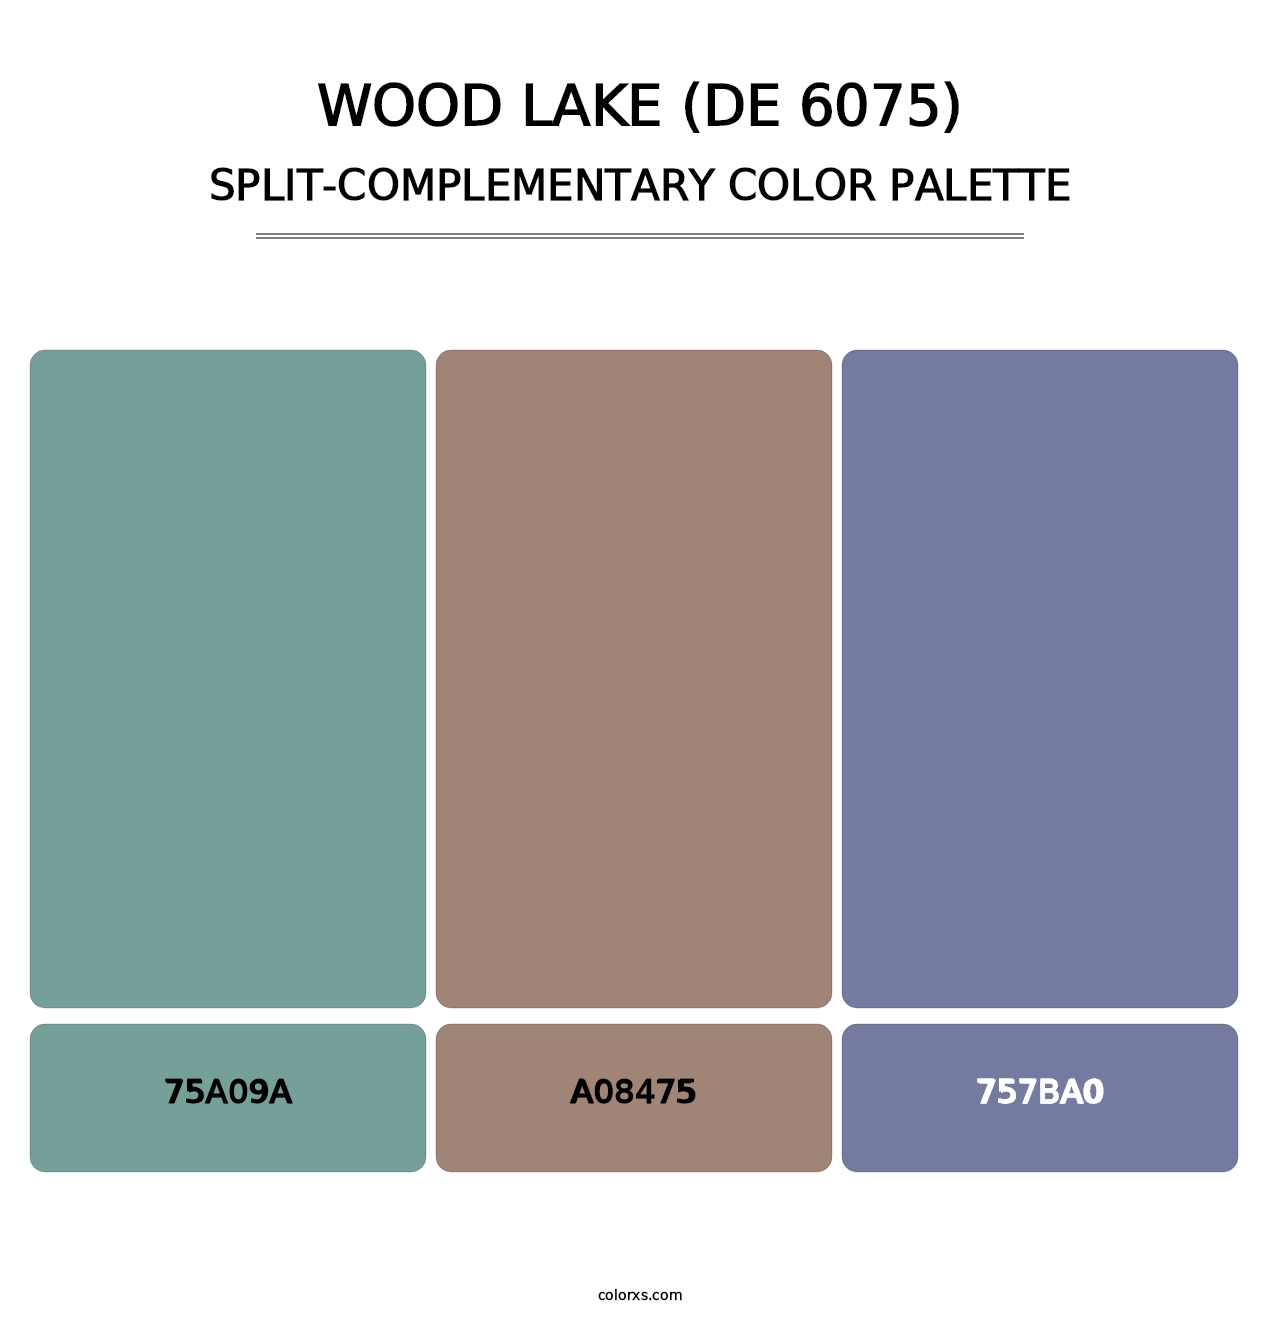 Wood Lake (DE 6075) - Split-Complementary Color Palette